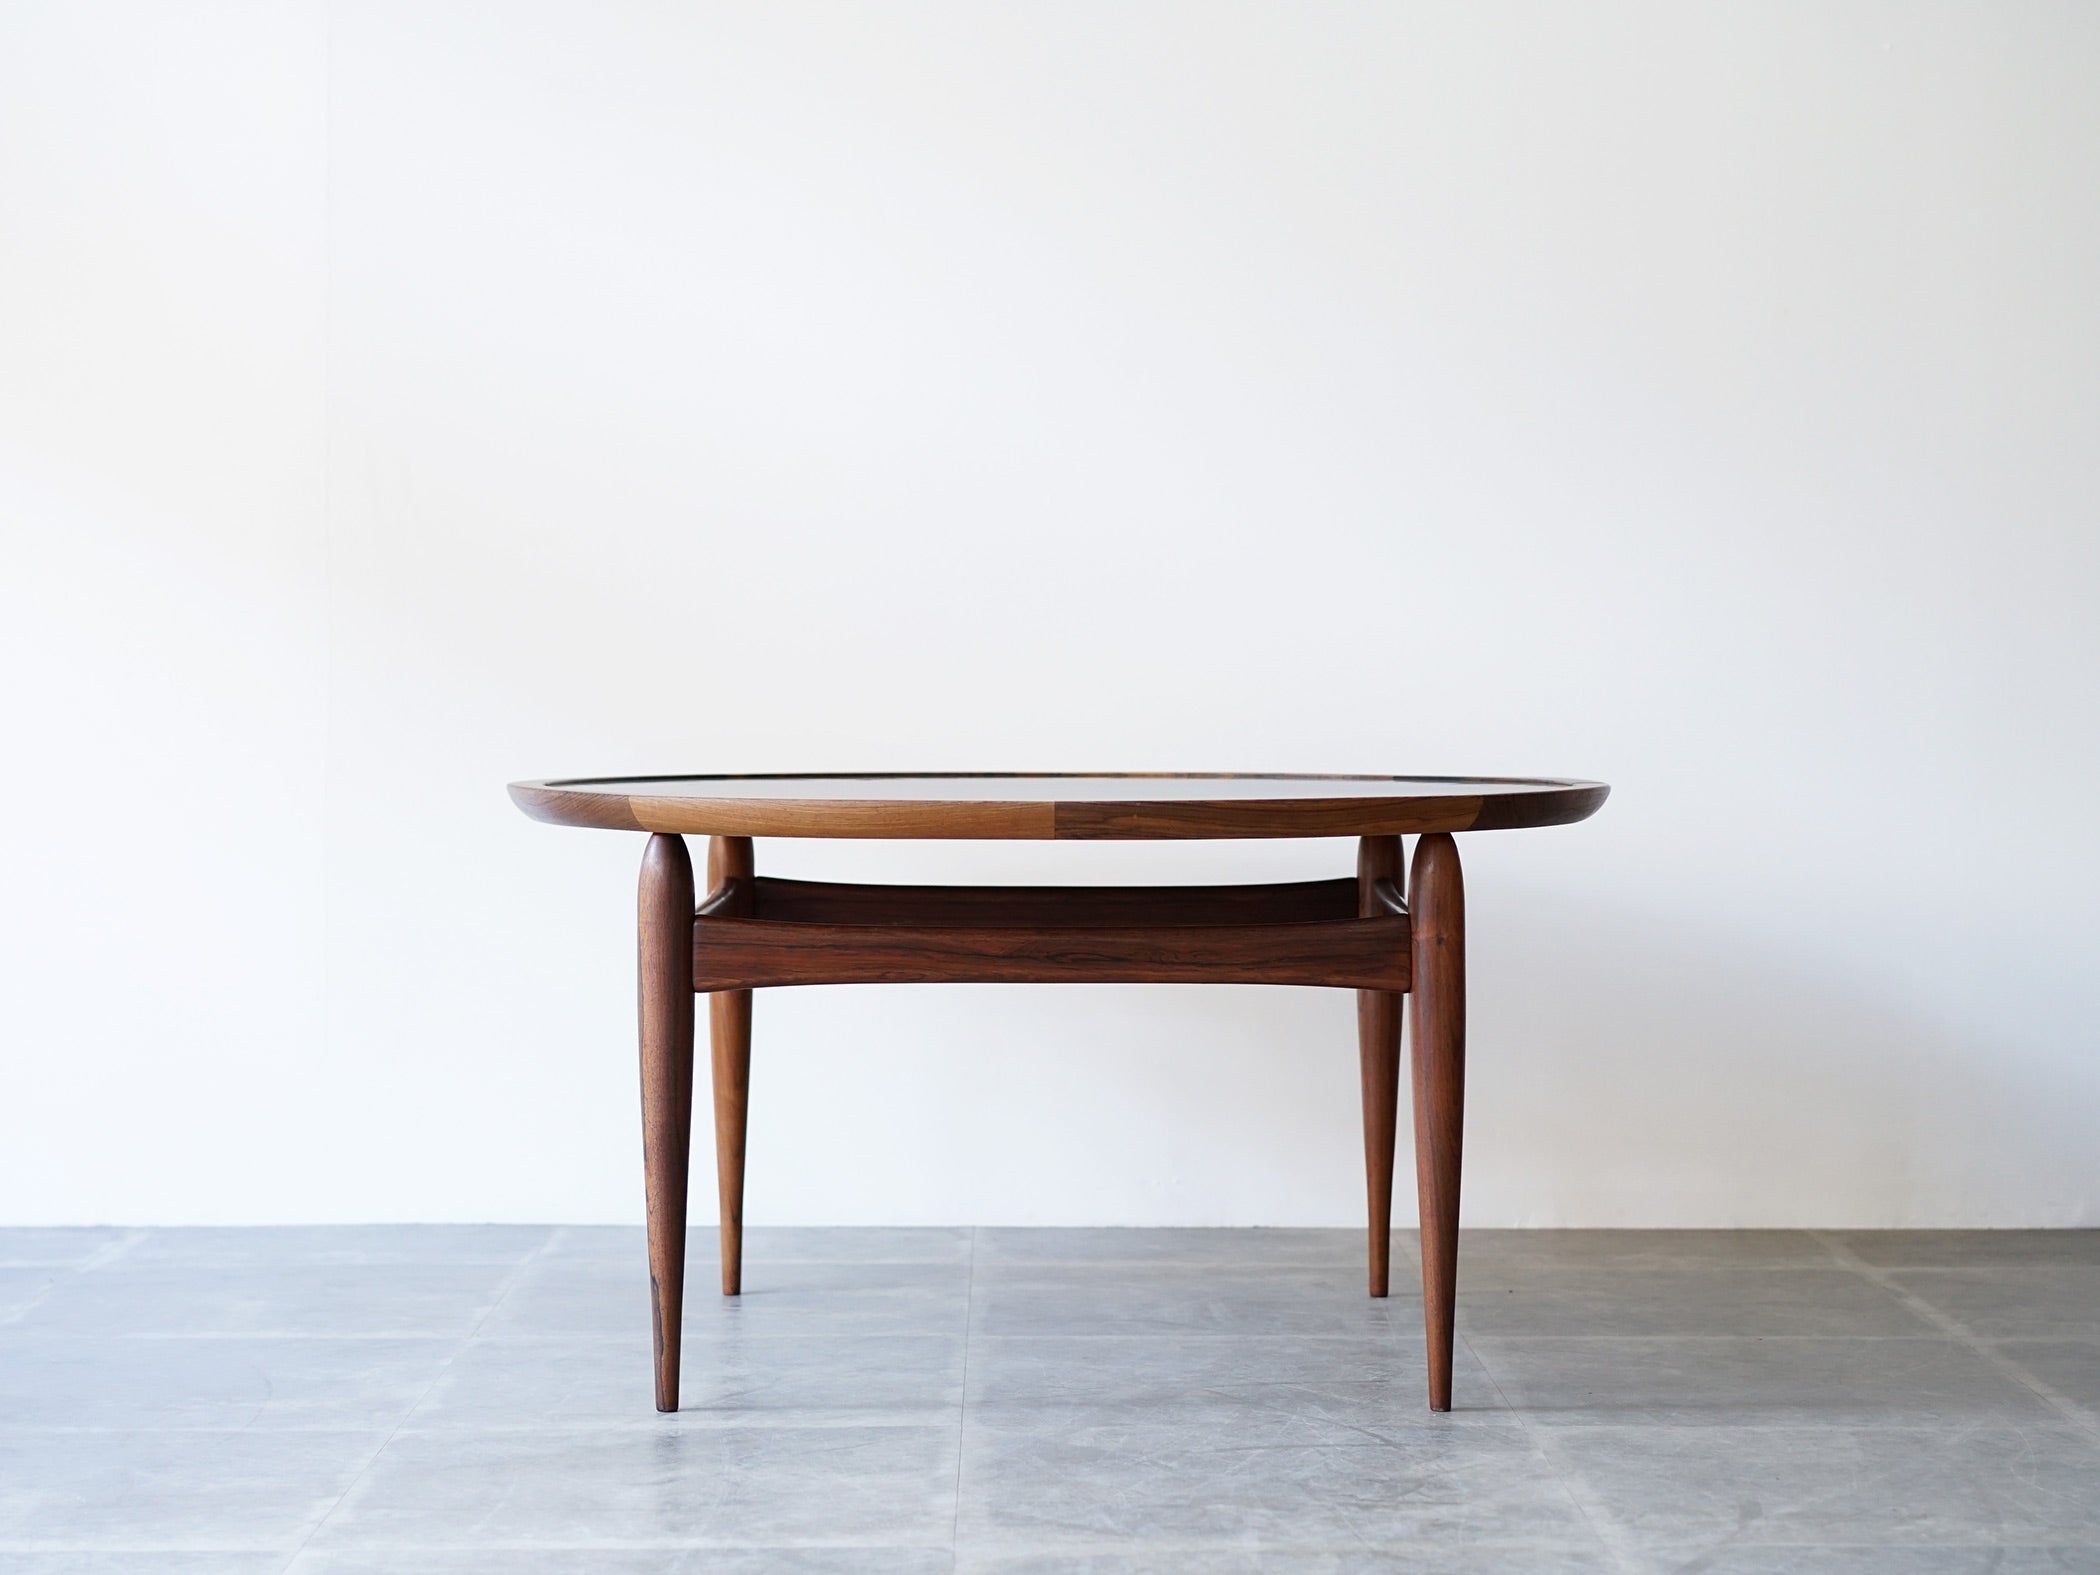 アイヴァンAヨハンソン ブラジリアンローズウッドの丸テーブル コーヒーテーブル Ejvind AJohansson Reversable Table brazilian rosewood